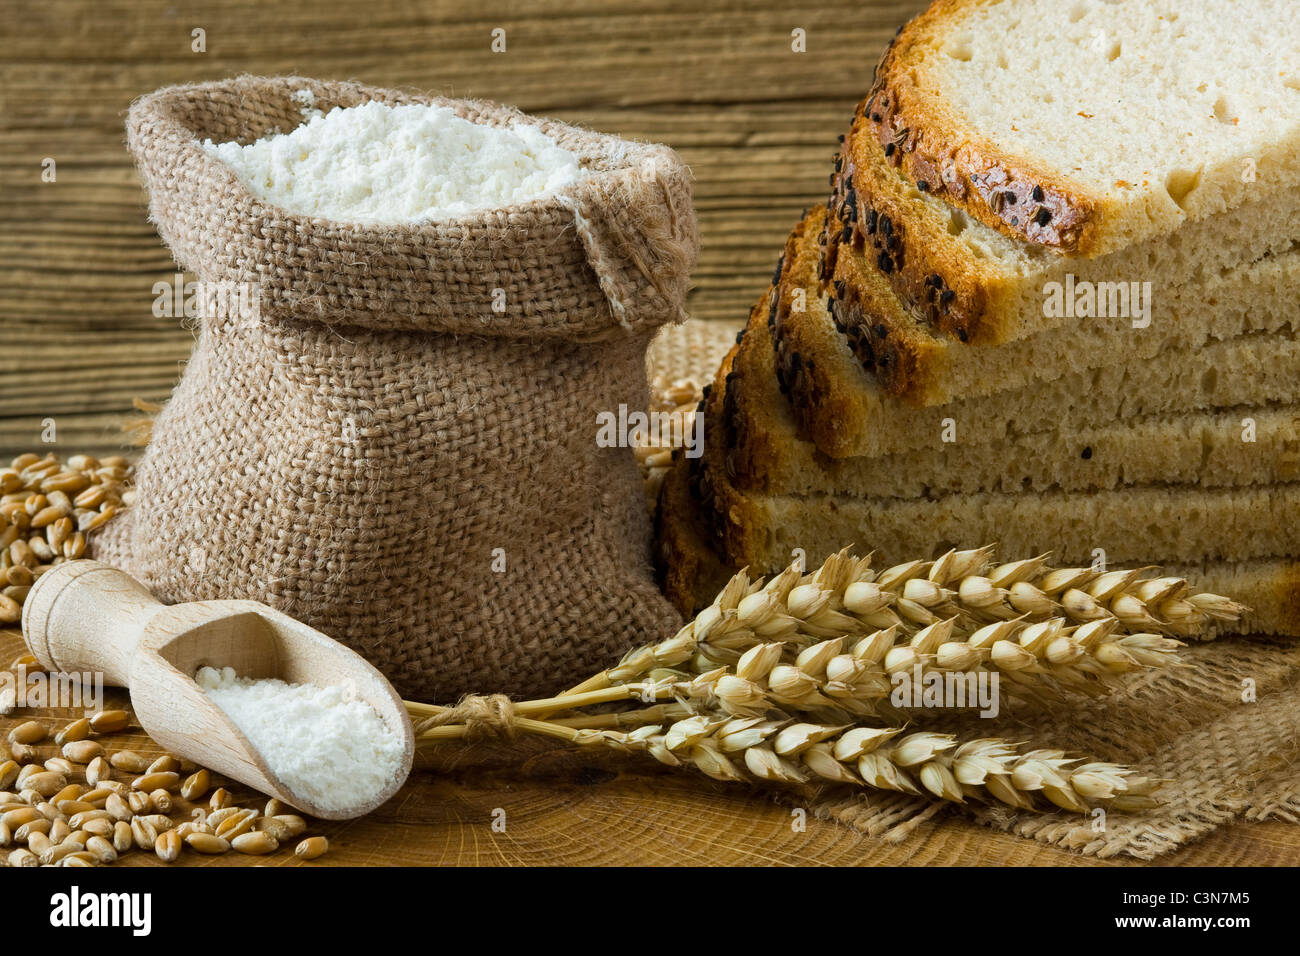 Pan casero fresco y harina en la pequeña bolsa de arpillera Foto de stock